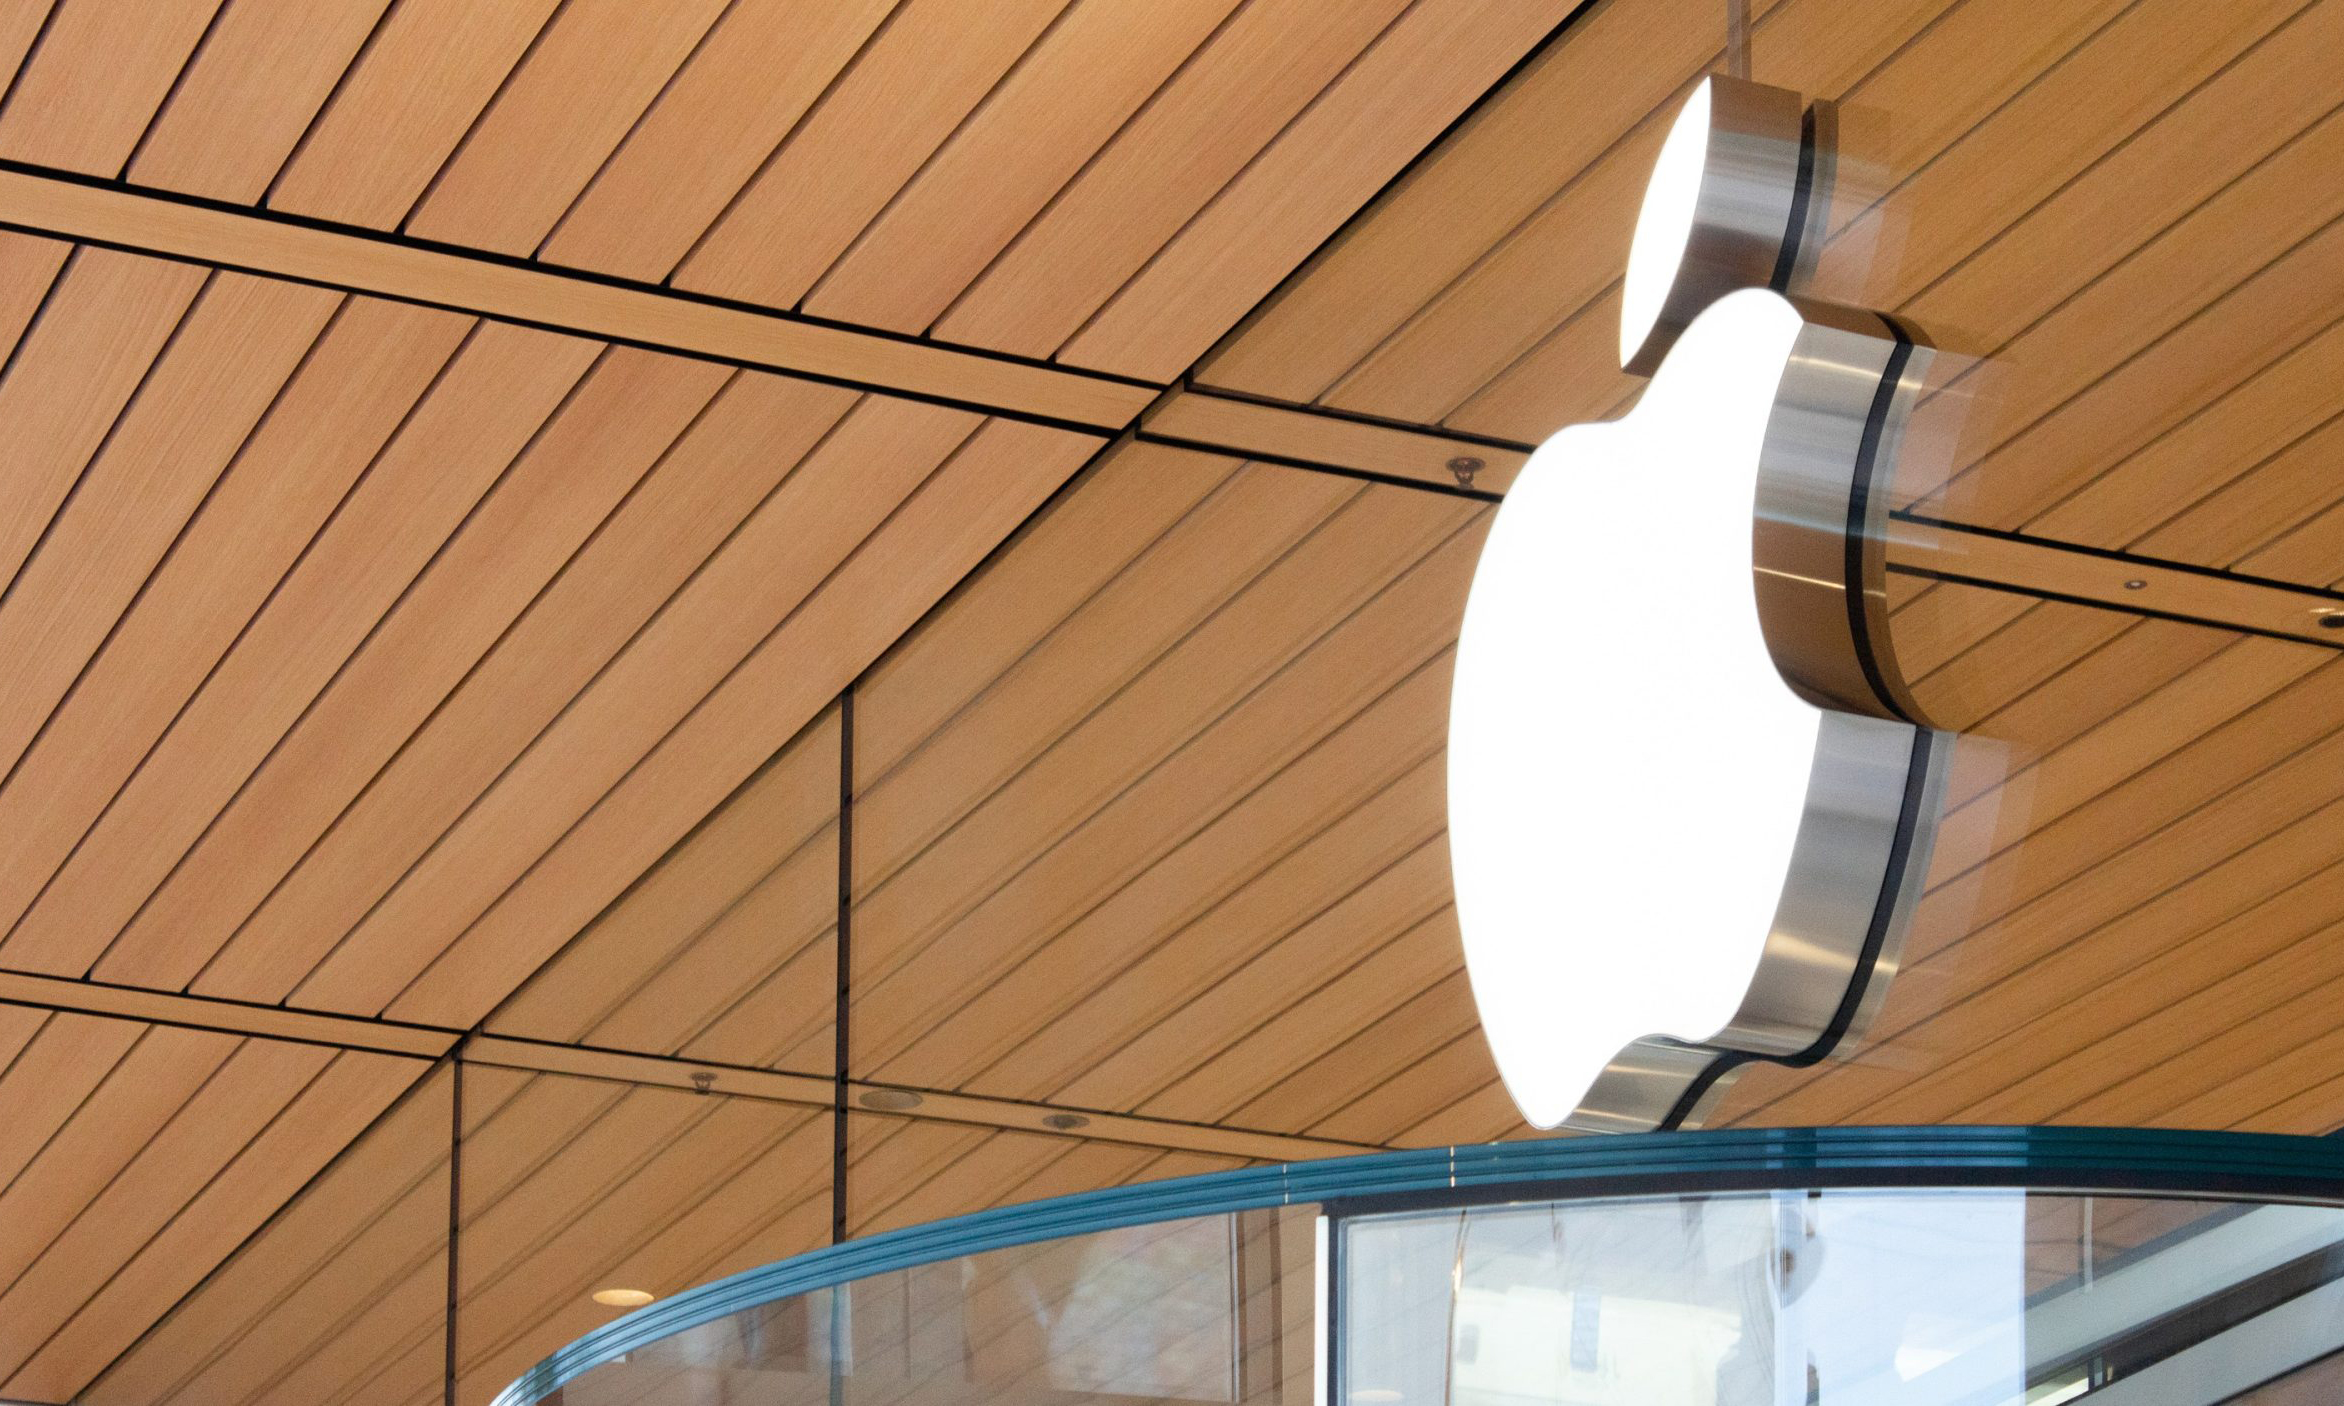 Apple 将在下周陆续开放部分美国零售店